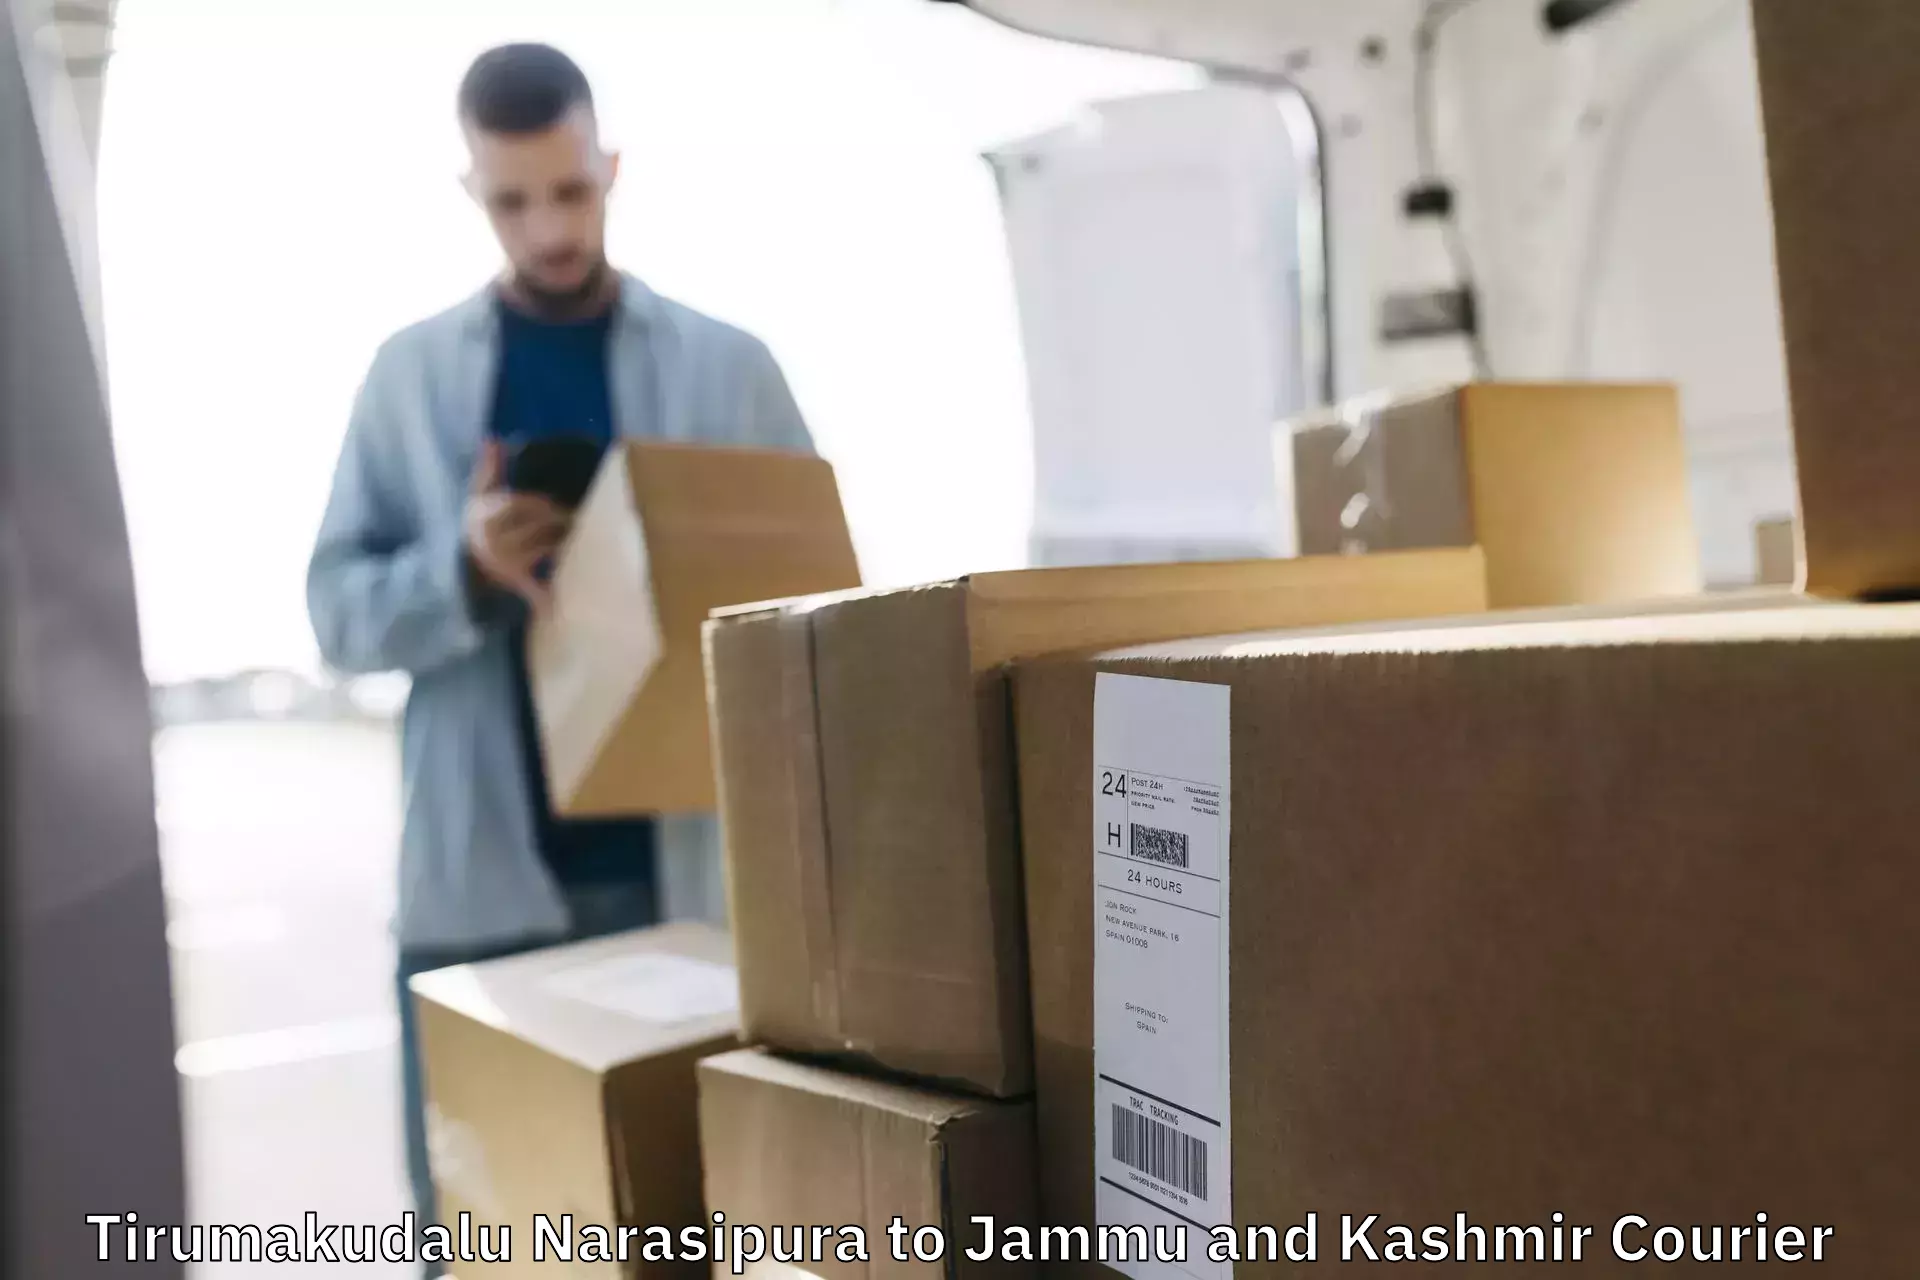 Multi-national courier services Tirumakudalu Narasipura to Jammu